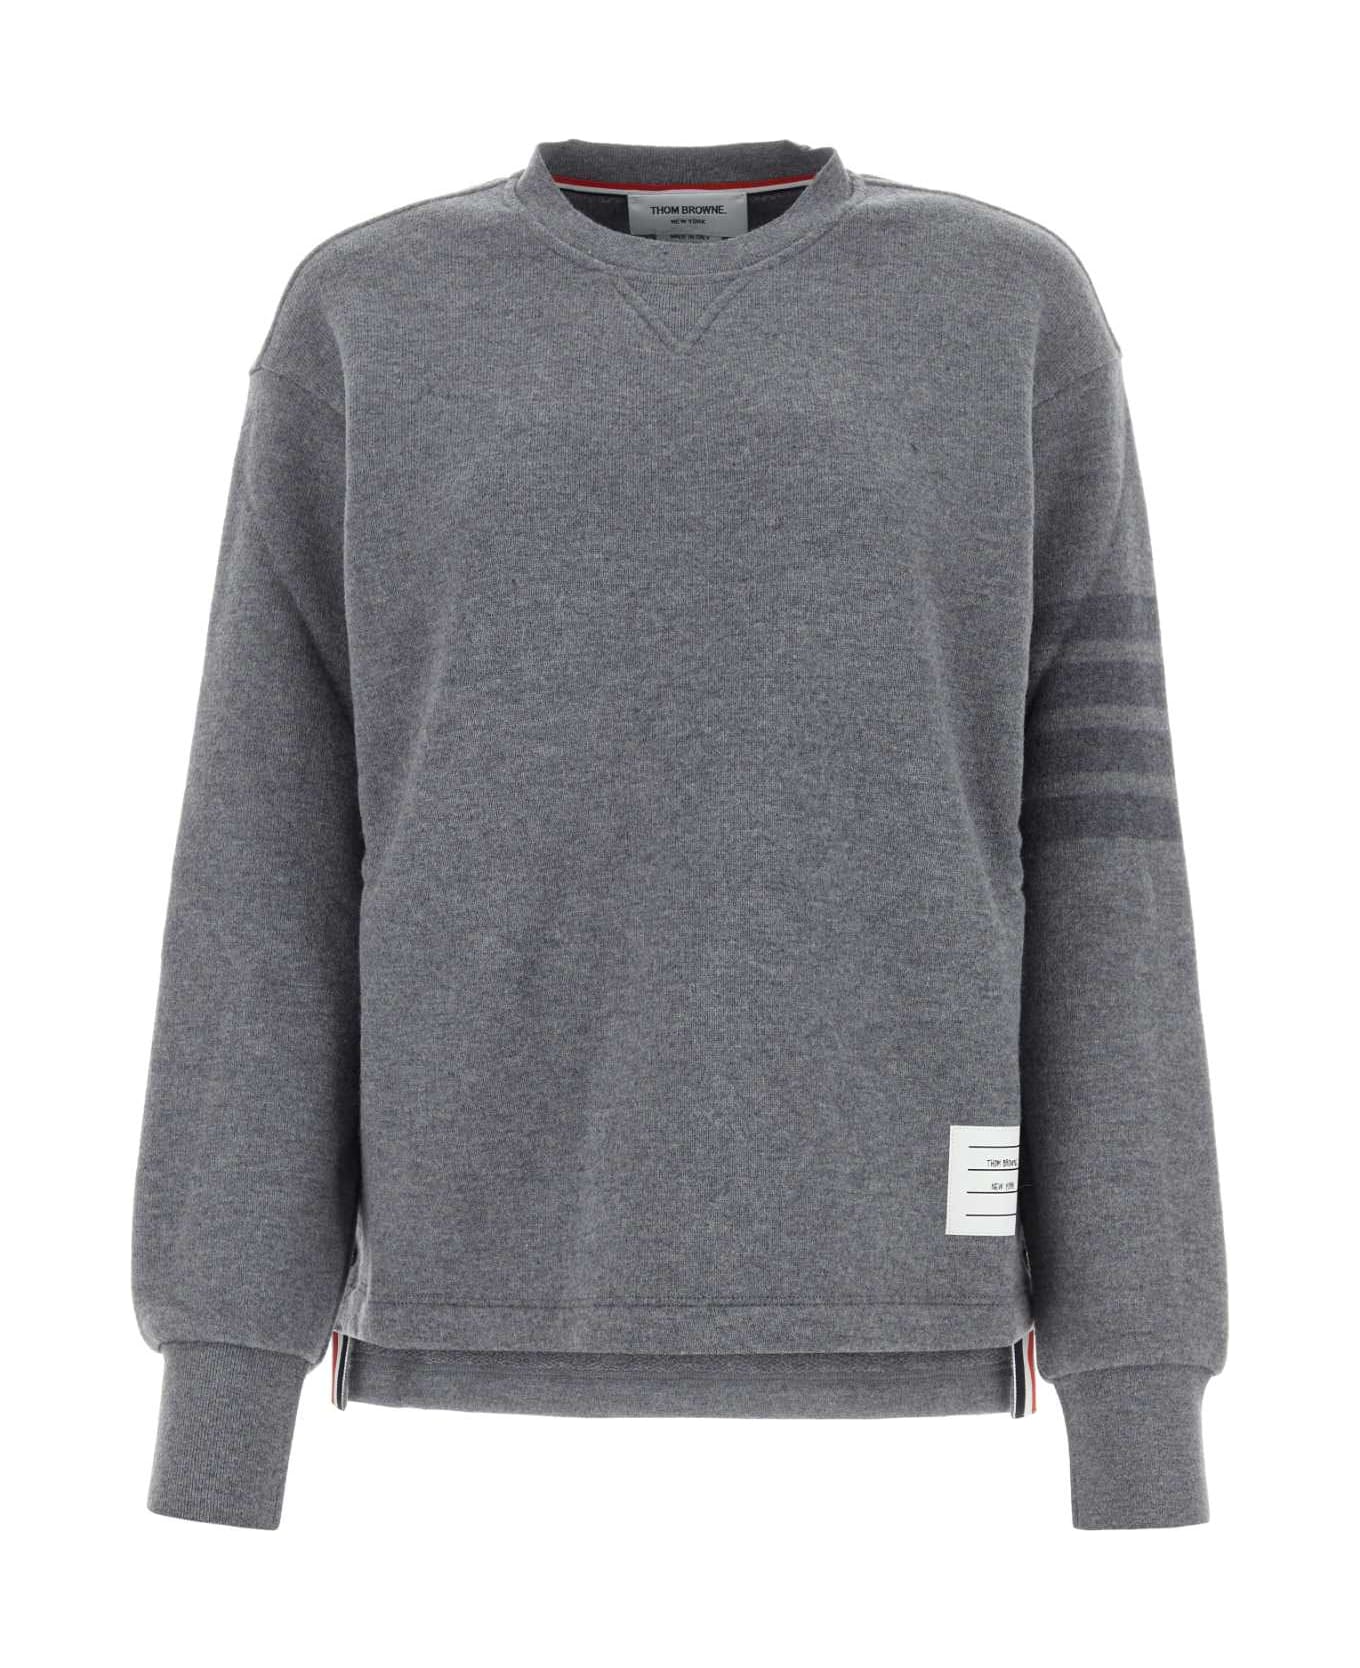 Thom Browne Grey Wool Sweatshirt - LTGREY フリース